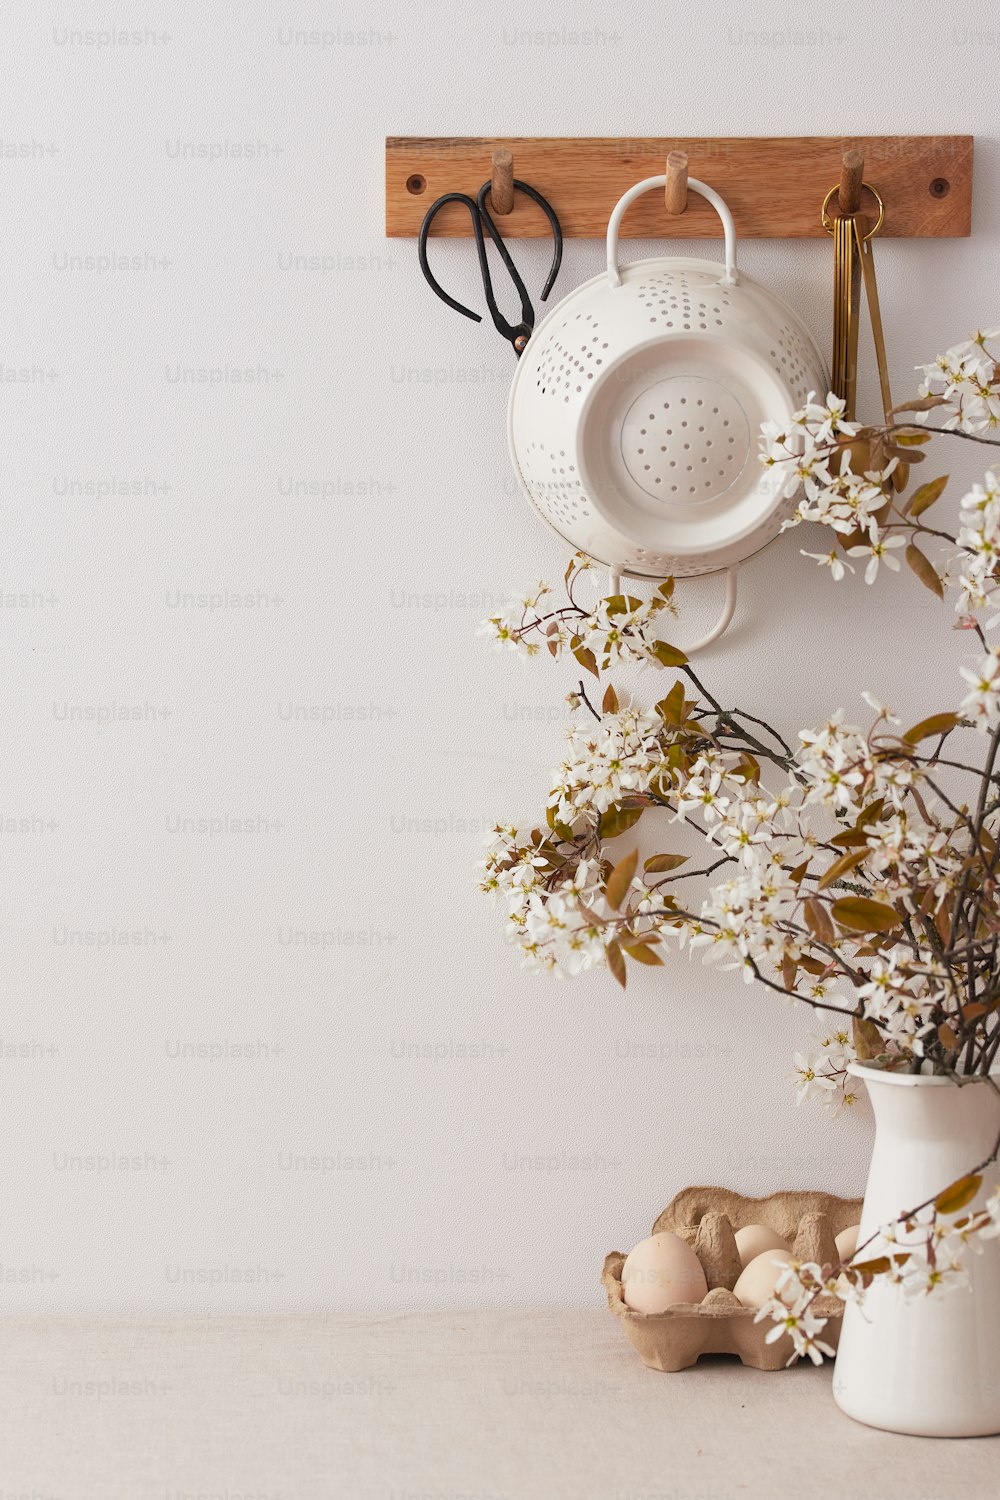 um vaso branco com flores e um par de tesouras